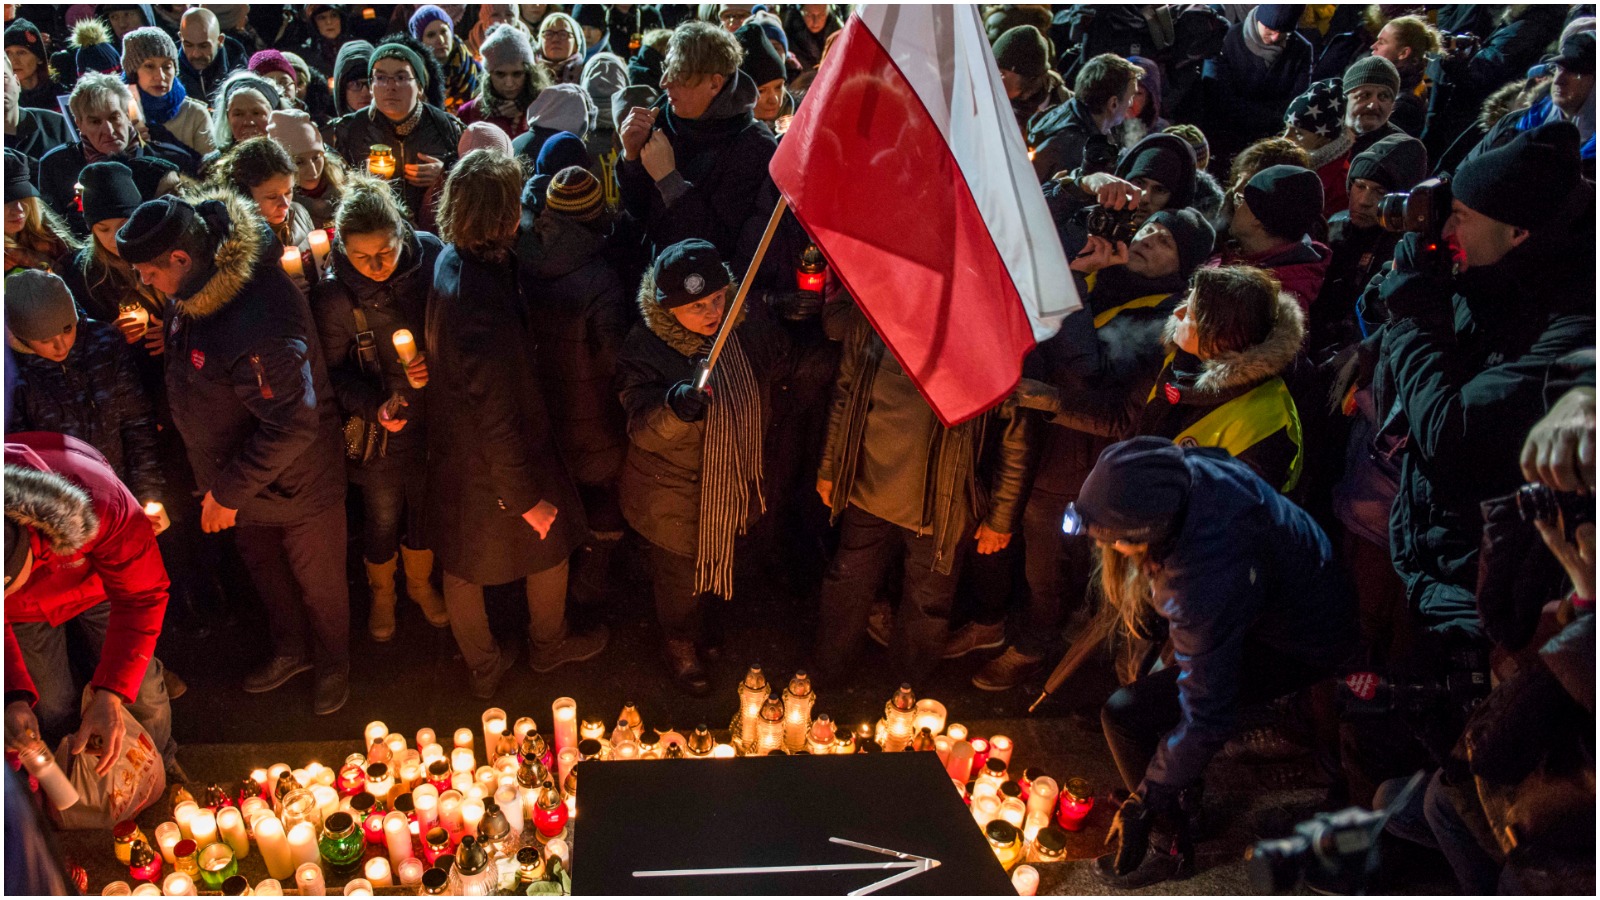 Ota Tiefenböck: Polens splittelse mellem liberale og nationalister er kolossal, og nu er den begyndt at koste liv